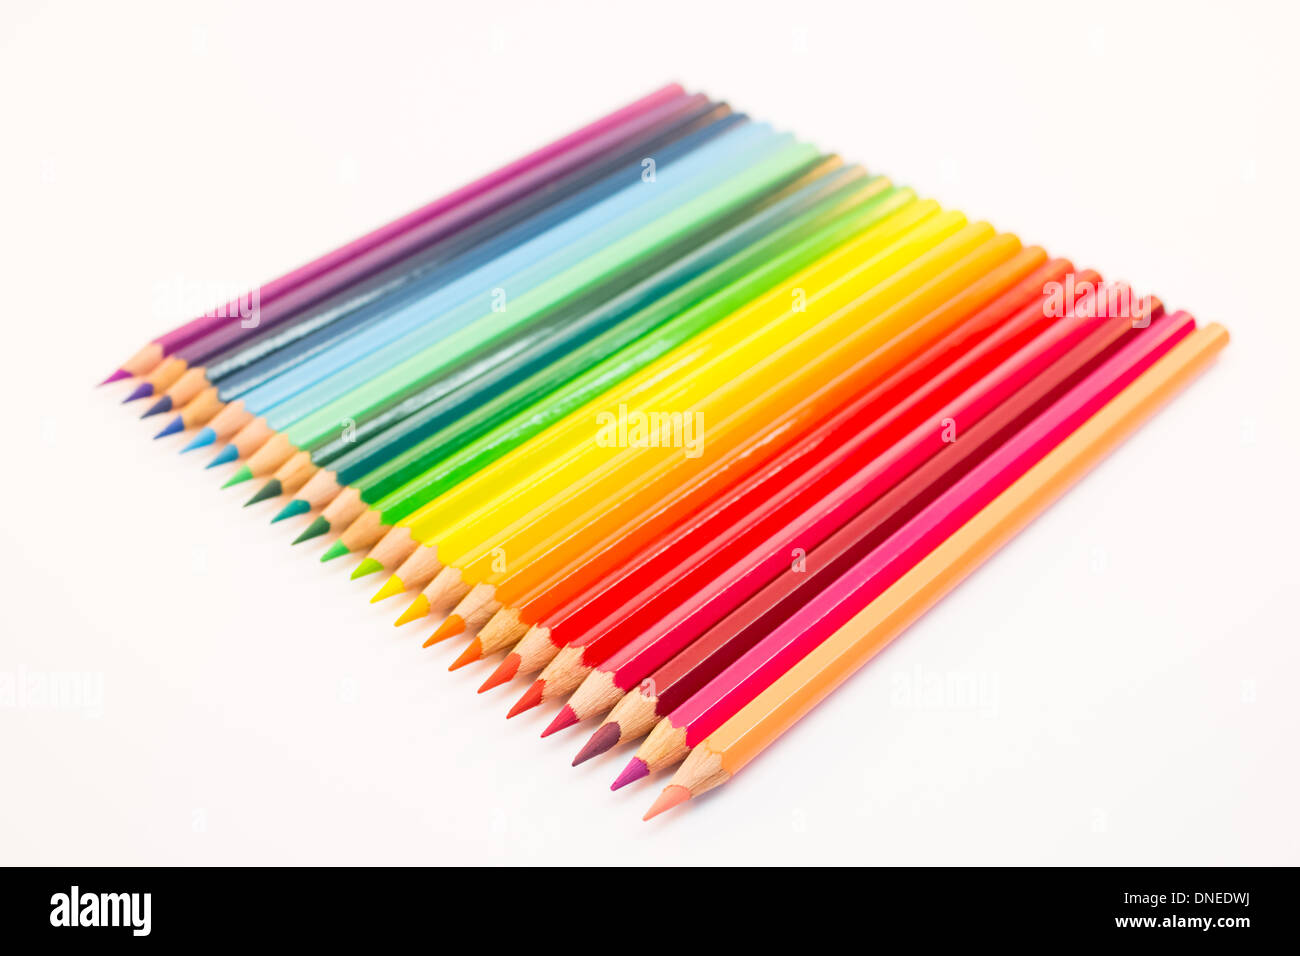 Pastelli colorati immagini e fotografie stock ad alta risoluzione - Alamy